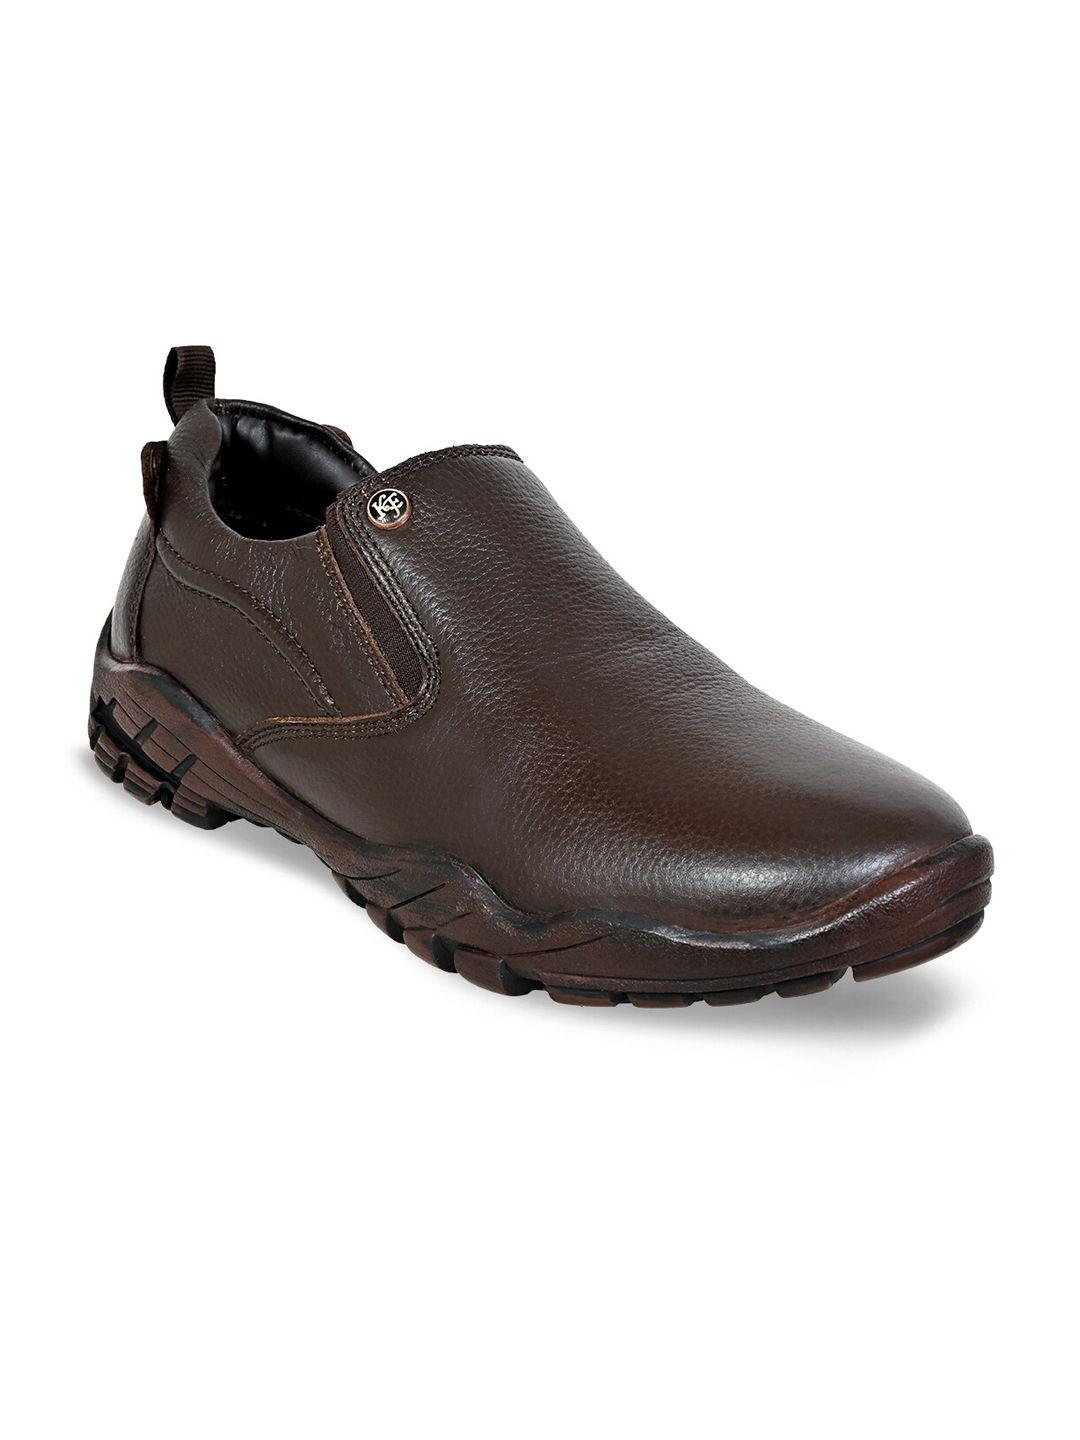 kicksfire men leather formal slip-on shoes